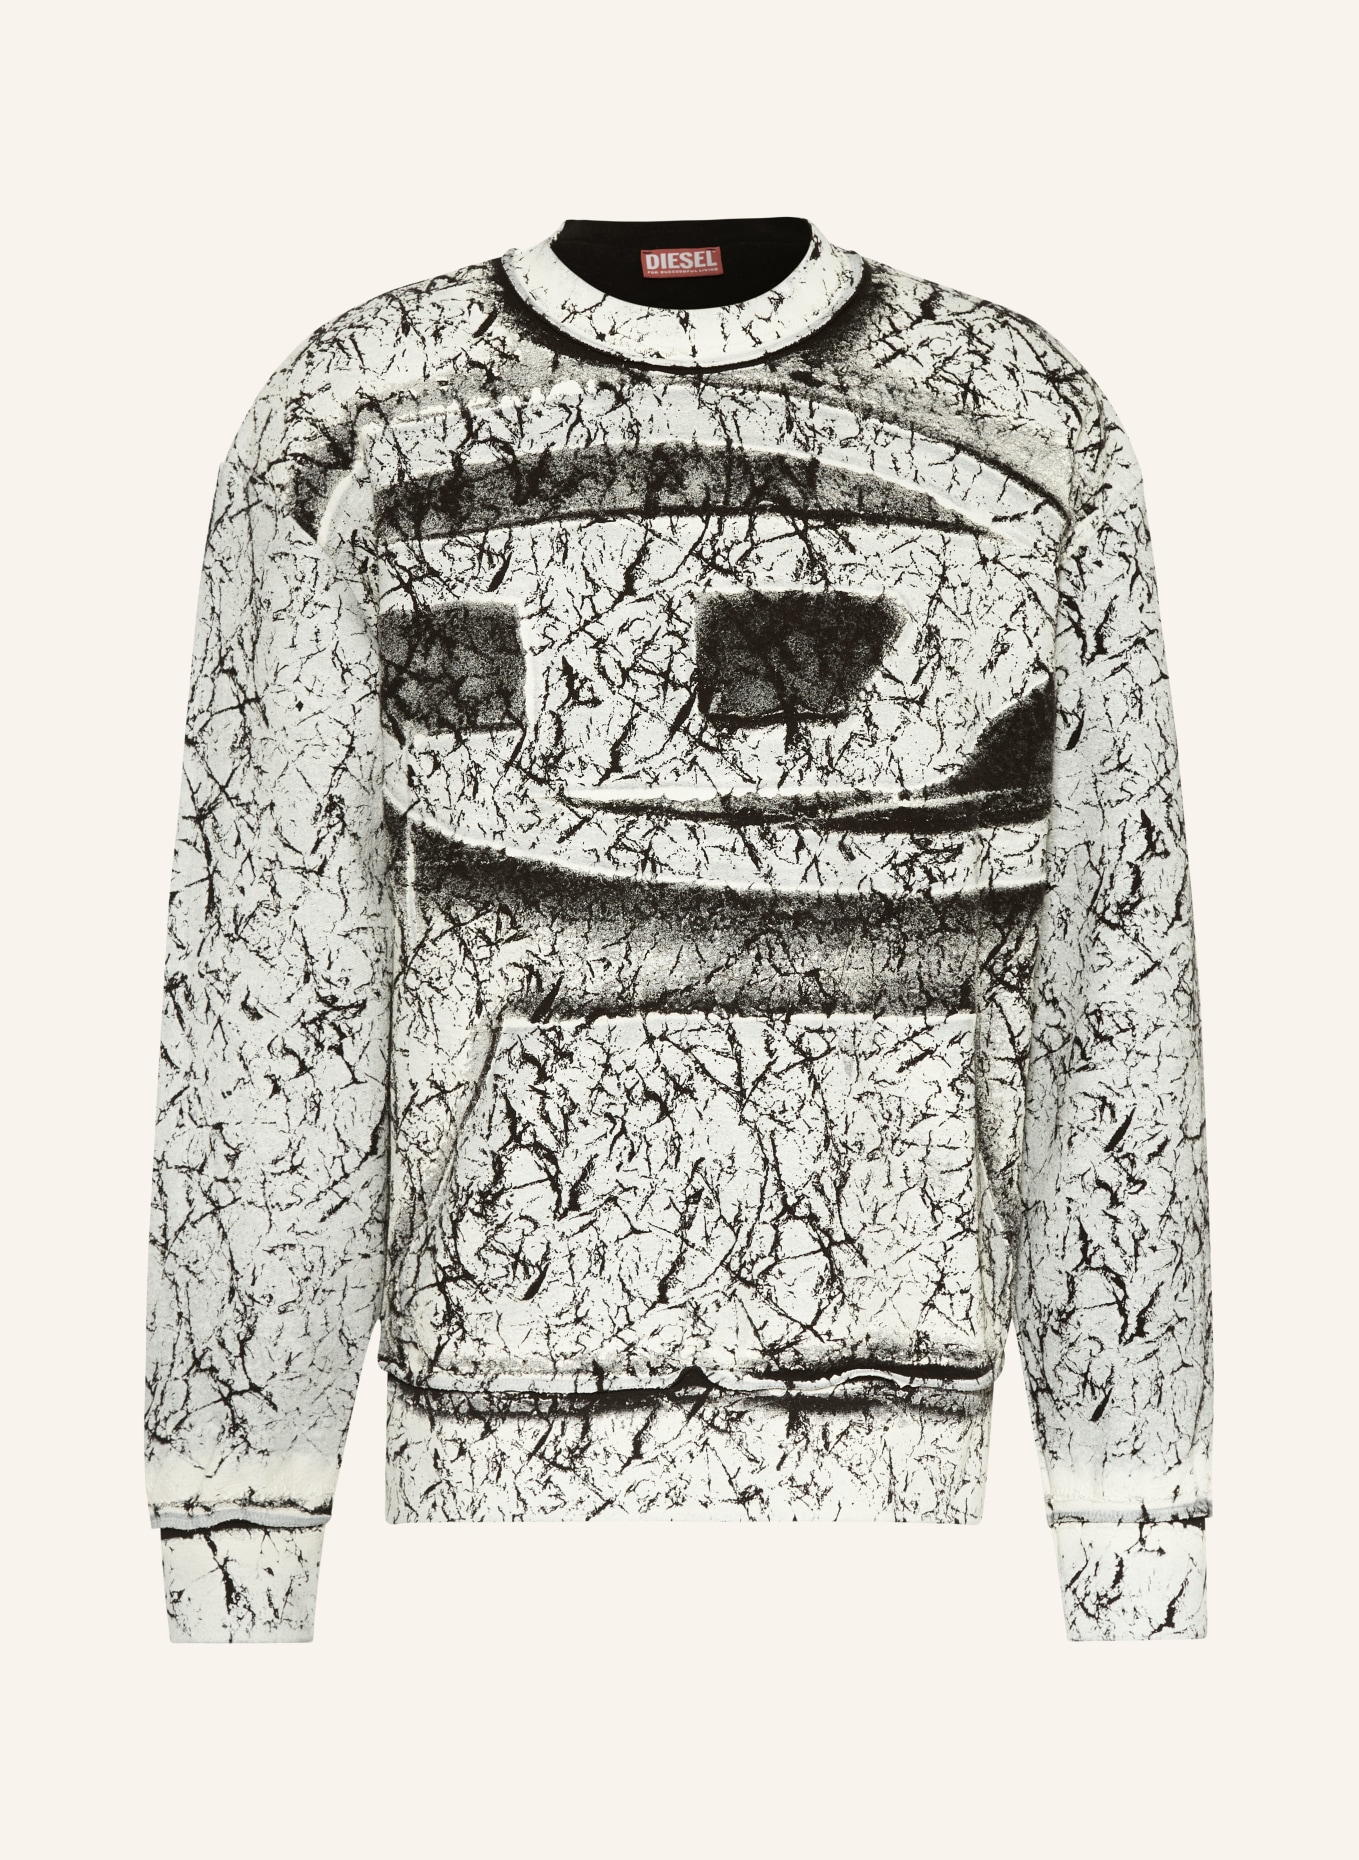 DIESEL Sweatshirt MACOVAL, Color: BLACK/ GRAY (Image 1)